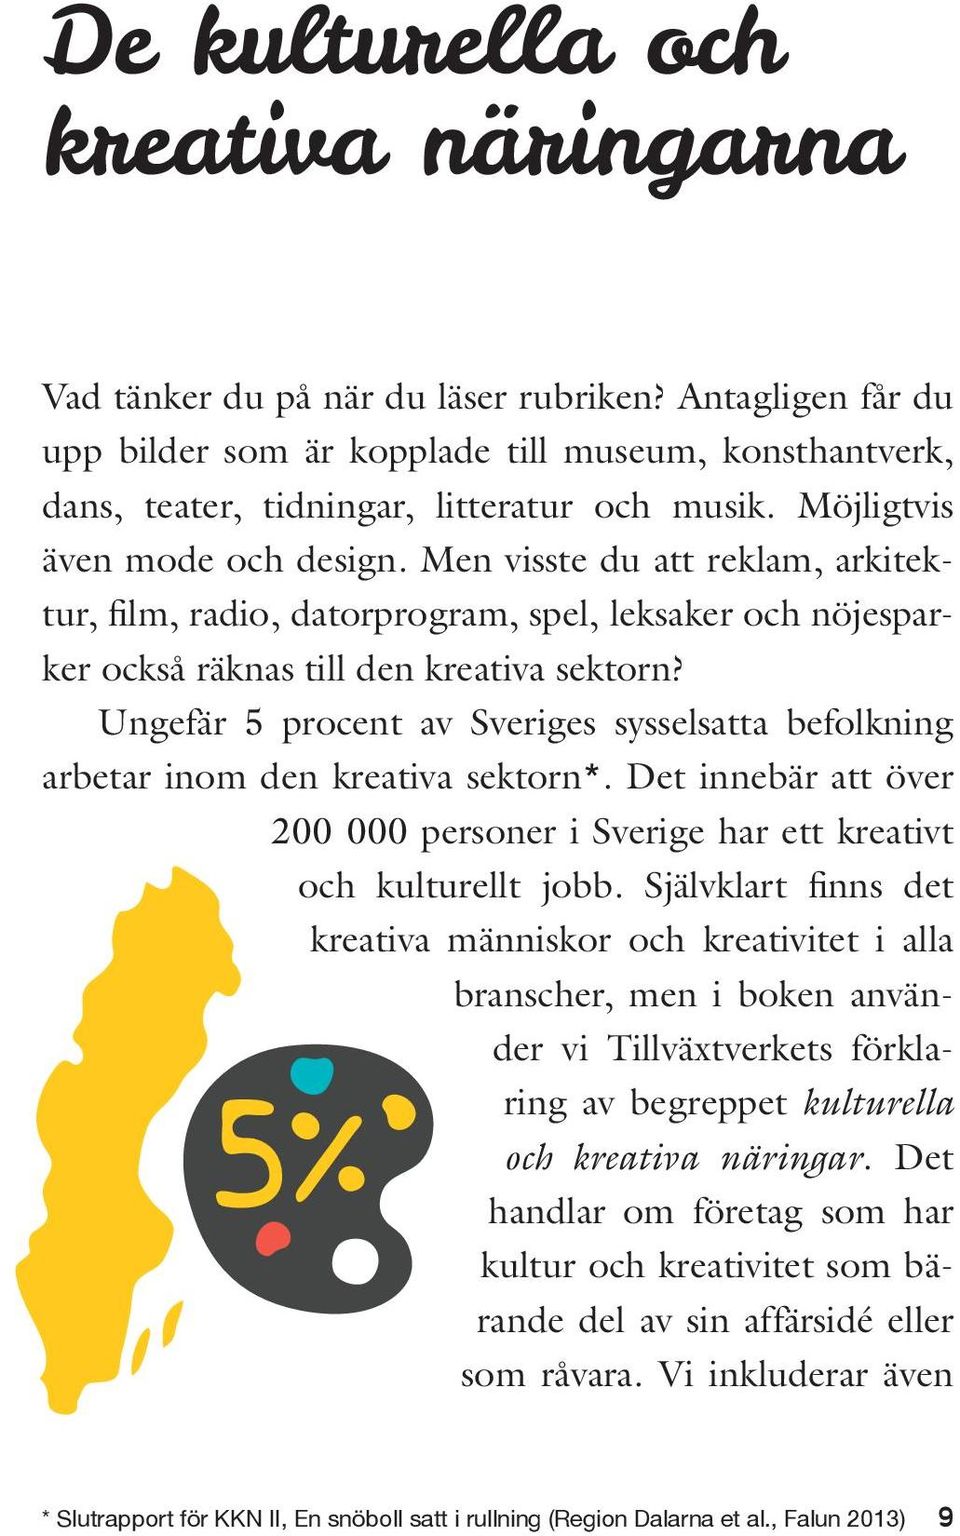 Ungefär 5 procent av Sveriges sysselsatta befolkning arbetar inom den kreativa sektorn*. Det innebär att över 200 000 personer i Sverige har ett kreativt och kulturellt jobb.